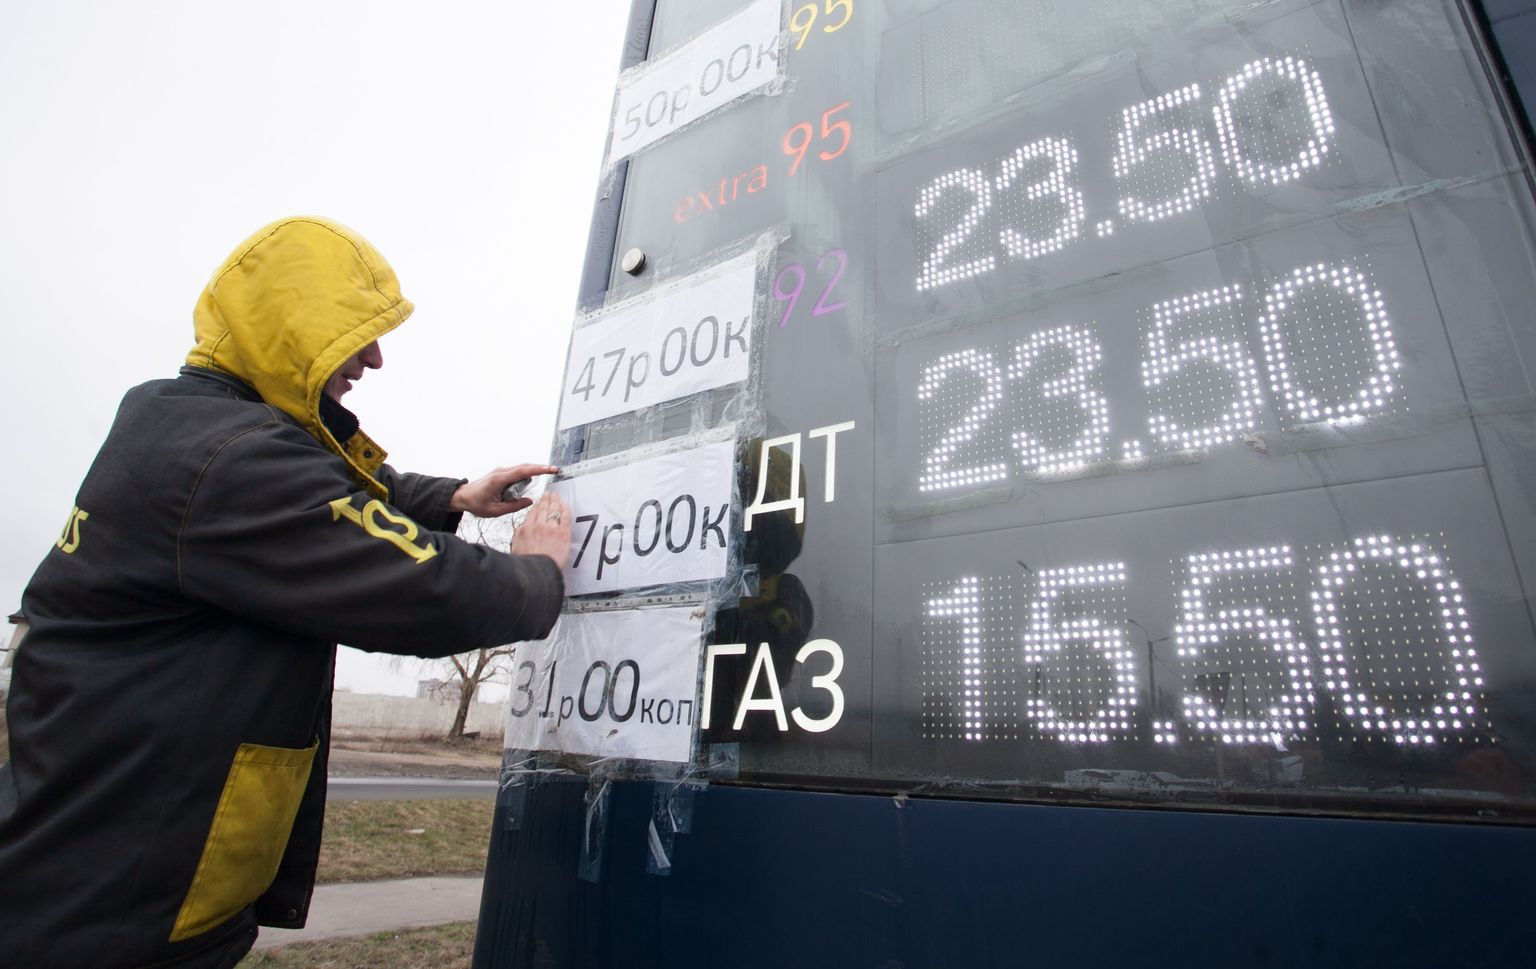 Donetski bensiinijaama töötaja kleebib grivnades hindade kõrvale hindu rublades. Üha rohkem arveldavad separatistide kontrollitavad territooriumid Ida-Ukrainas Vene rublades.